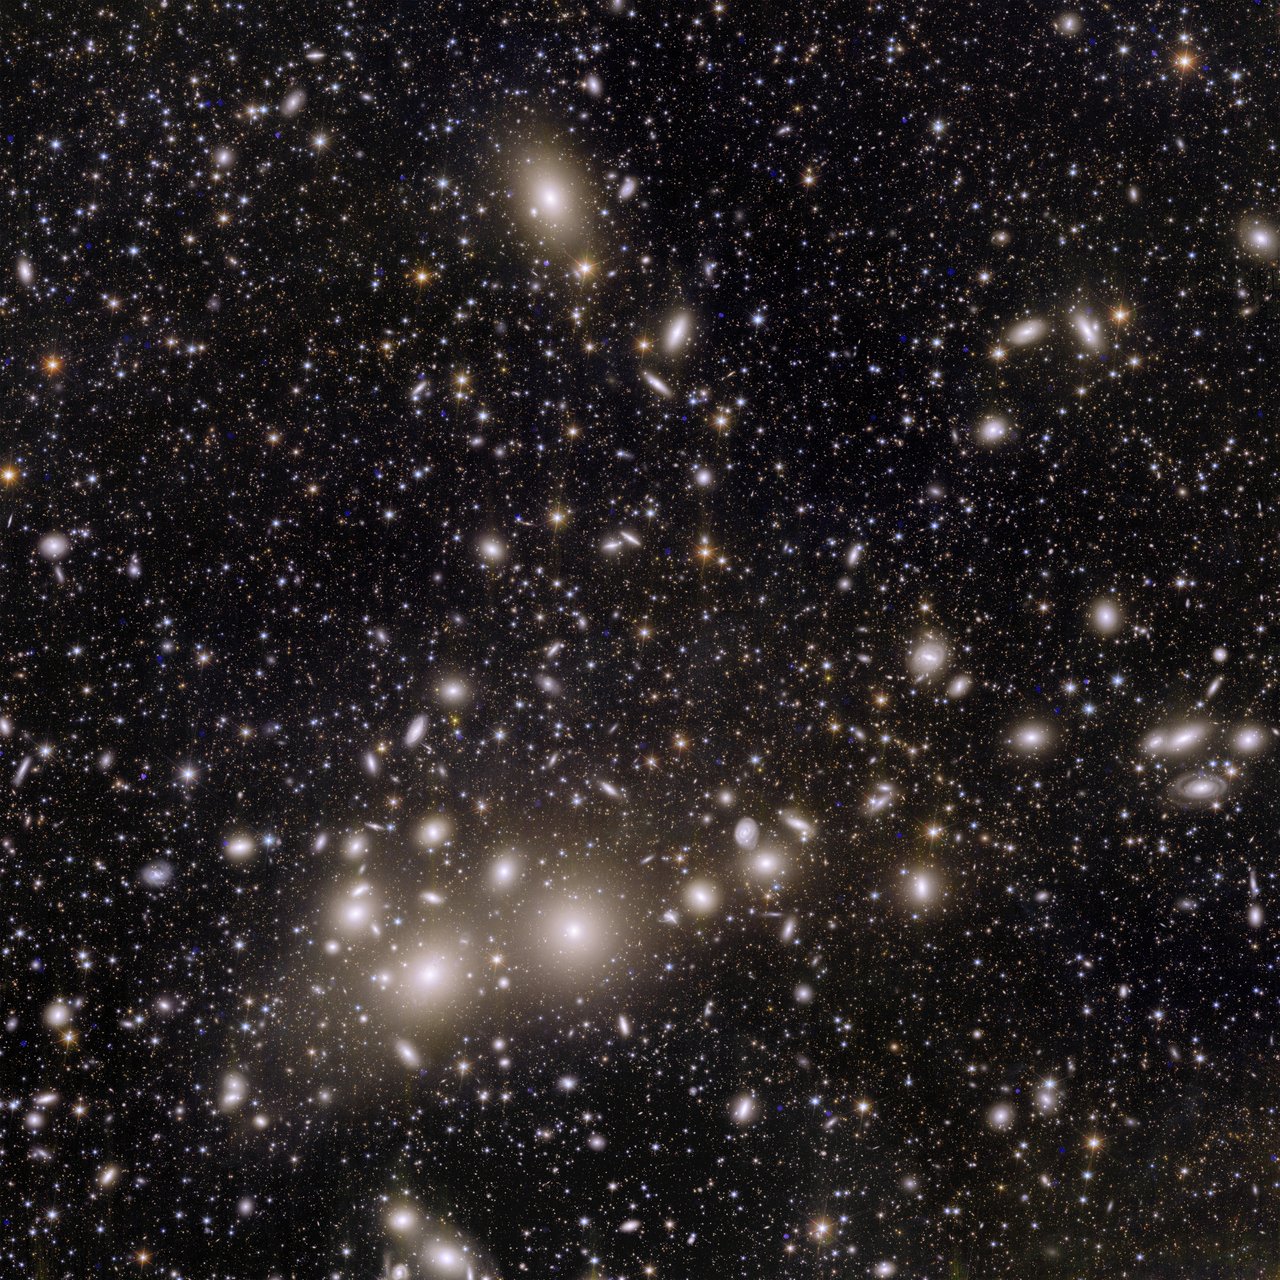 यूक्लिड द्वारा खींची गई पहली छवियों में से एक पर्सियस क्लस्टर को दर्शाती है, जो पृथ्वी से 240 मिलियन प्रकाश वर्ष दूर स्थित हजारों आकाशगंगाओं का एक समूह है। निकटतम आकाशगंगाएँ घूमती हुई संरचनाओं के रूप में दिखाई देती हैं जबकि सैकड़ों हजारों पृष्ठभूमि आकाशगंगाएँ केवल प्रकाश बिंदु के रूप में दिखाई देती हैं।